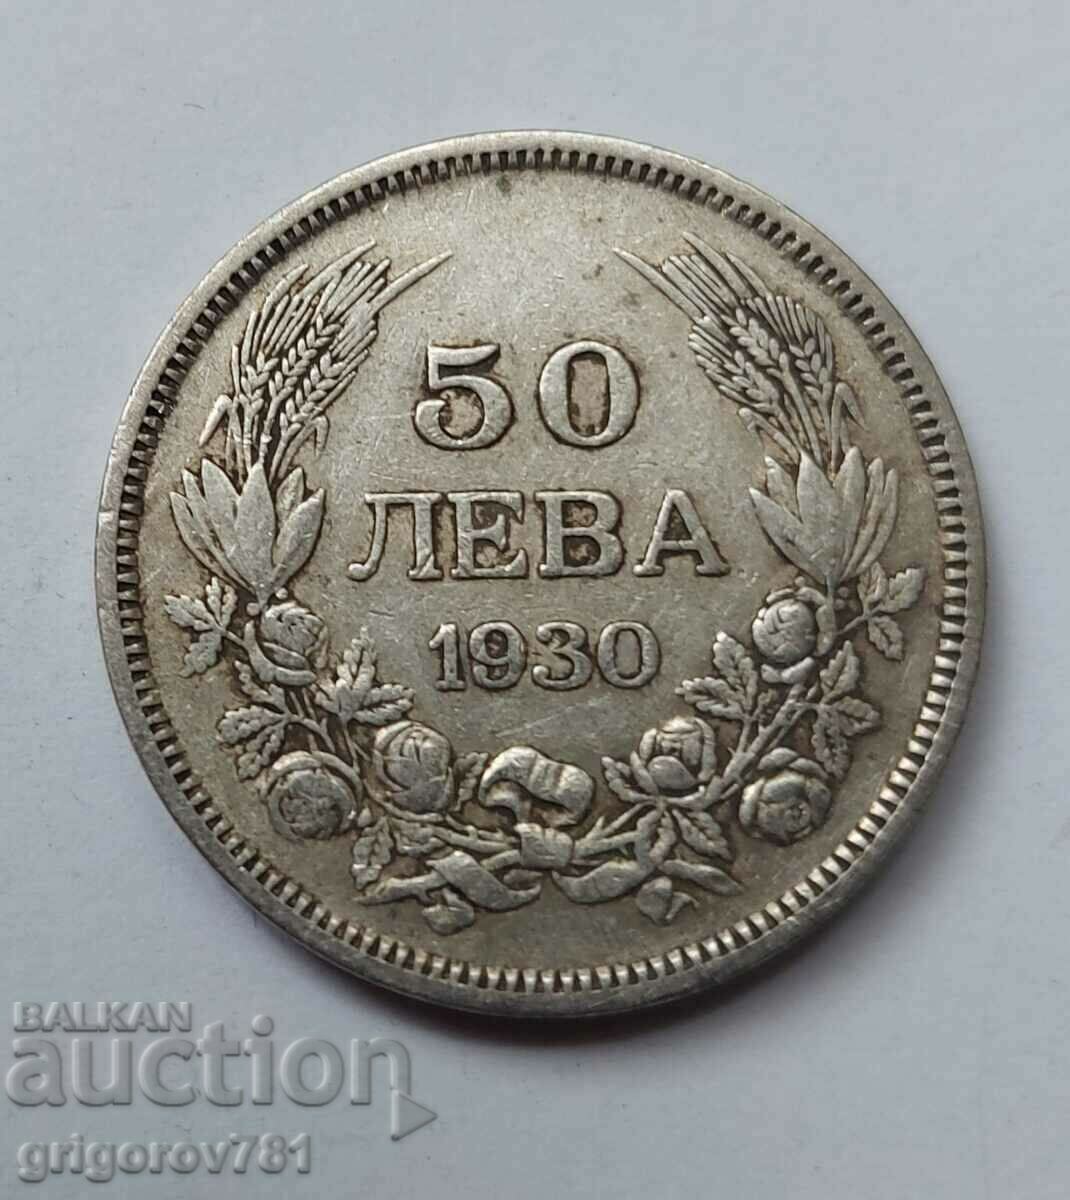 Ασήμι 50 λέβα Βουλγαρία 1930 - ασημένιο νόμισμα #62